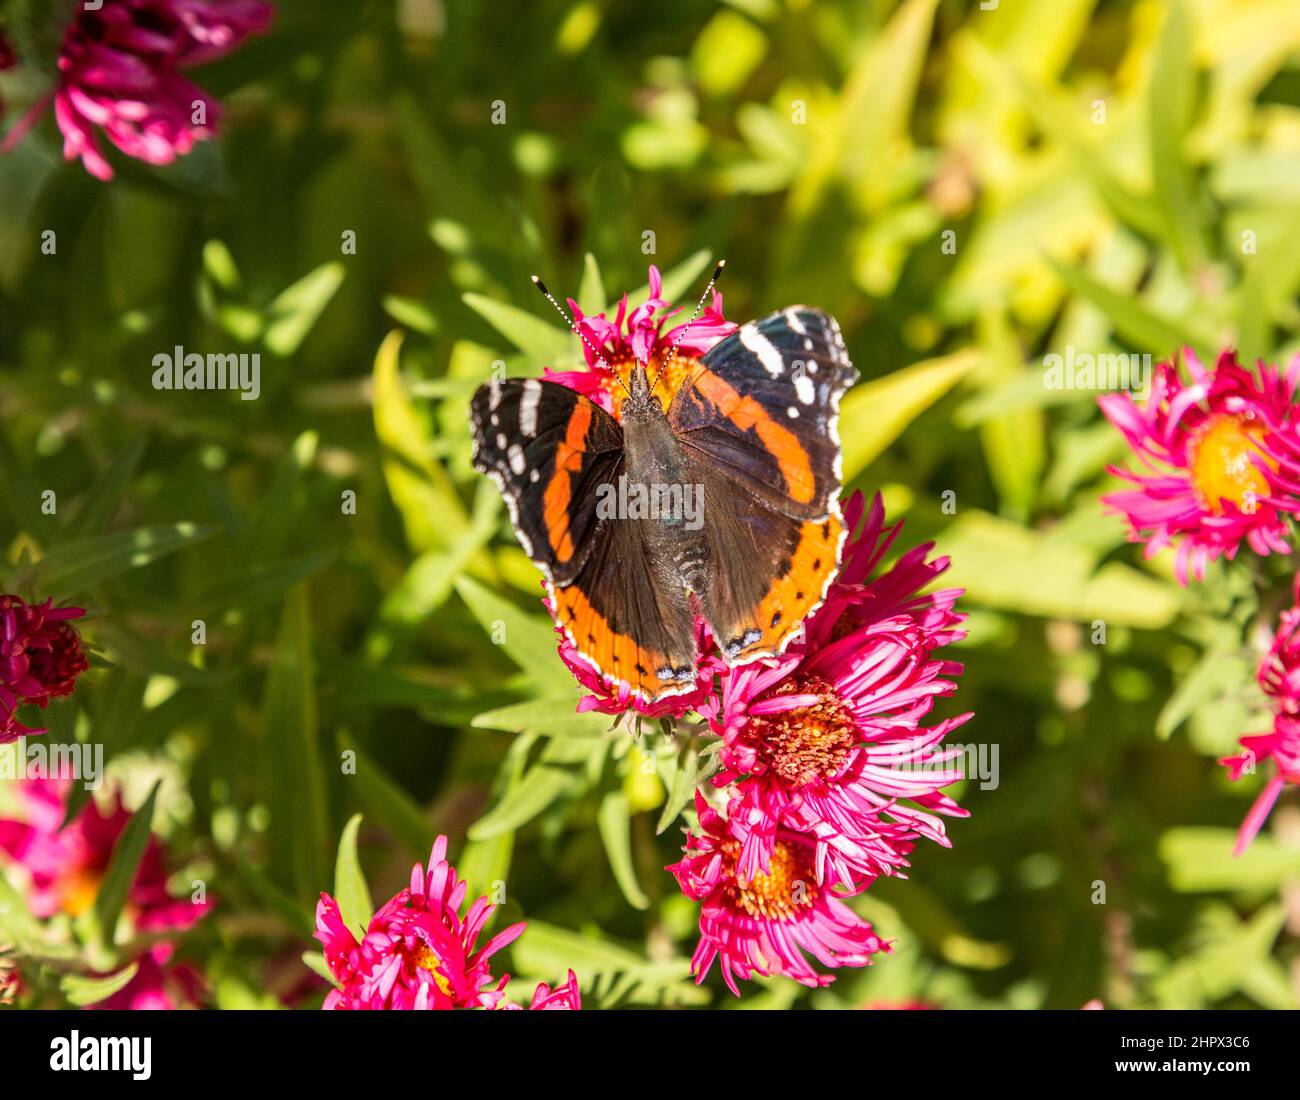 Admiral butterfly cerca cibo dolce al germoglio di fiore Foto Stock